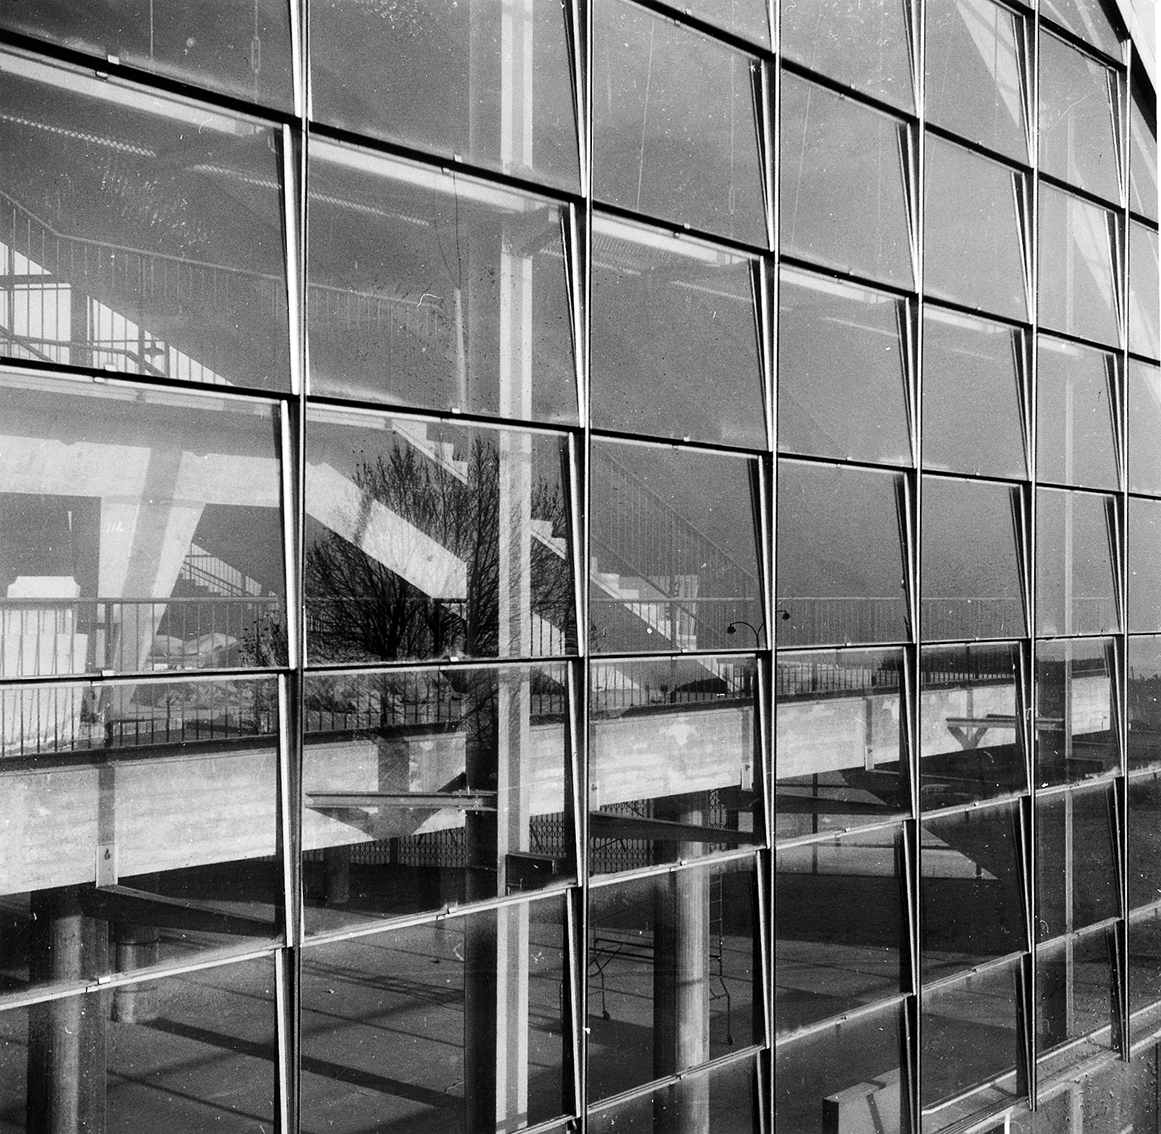 C.N.I.T., Centre National des Industries et des Techniques, Paris-La Défense, 1956–1958 (architects R. Camelot, J. de Mailly and B. H. Zehrfuss). Glazed facade by Jean Prouvé.